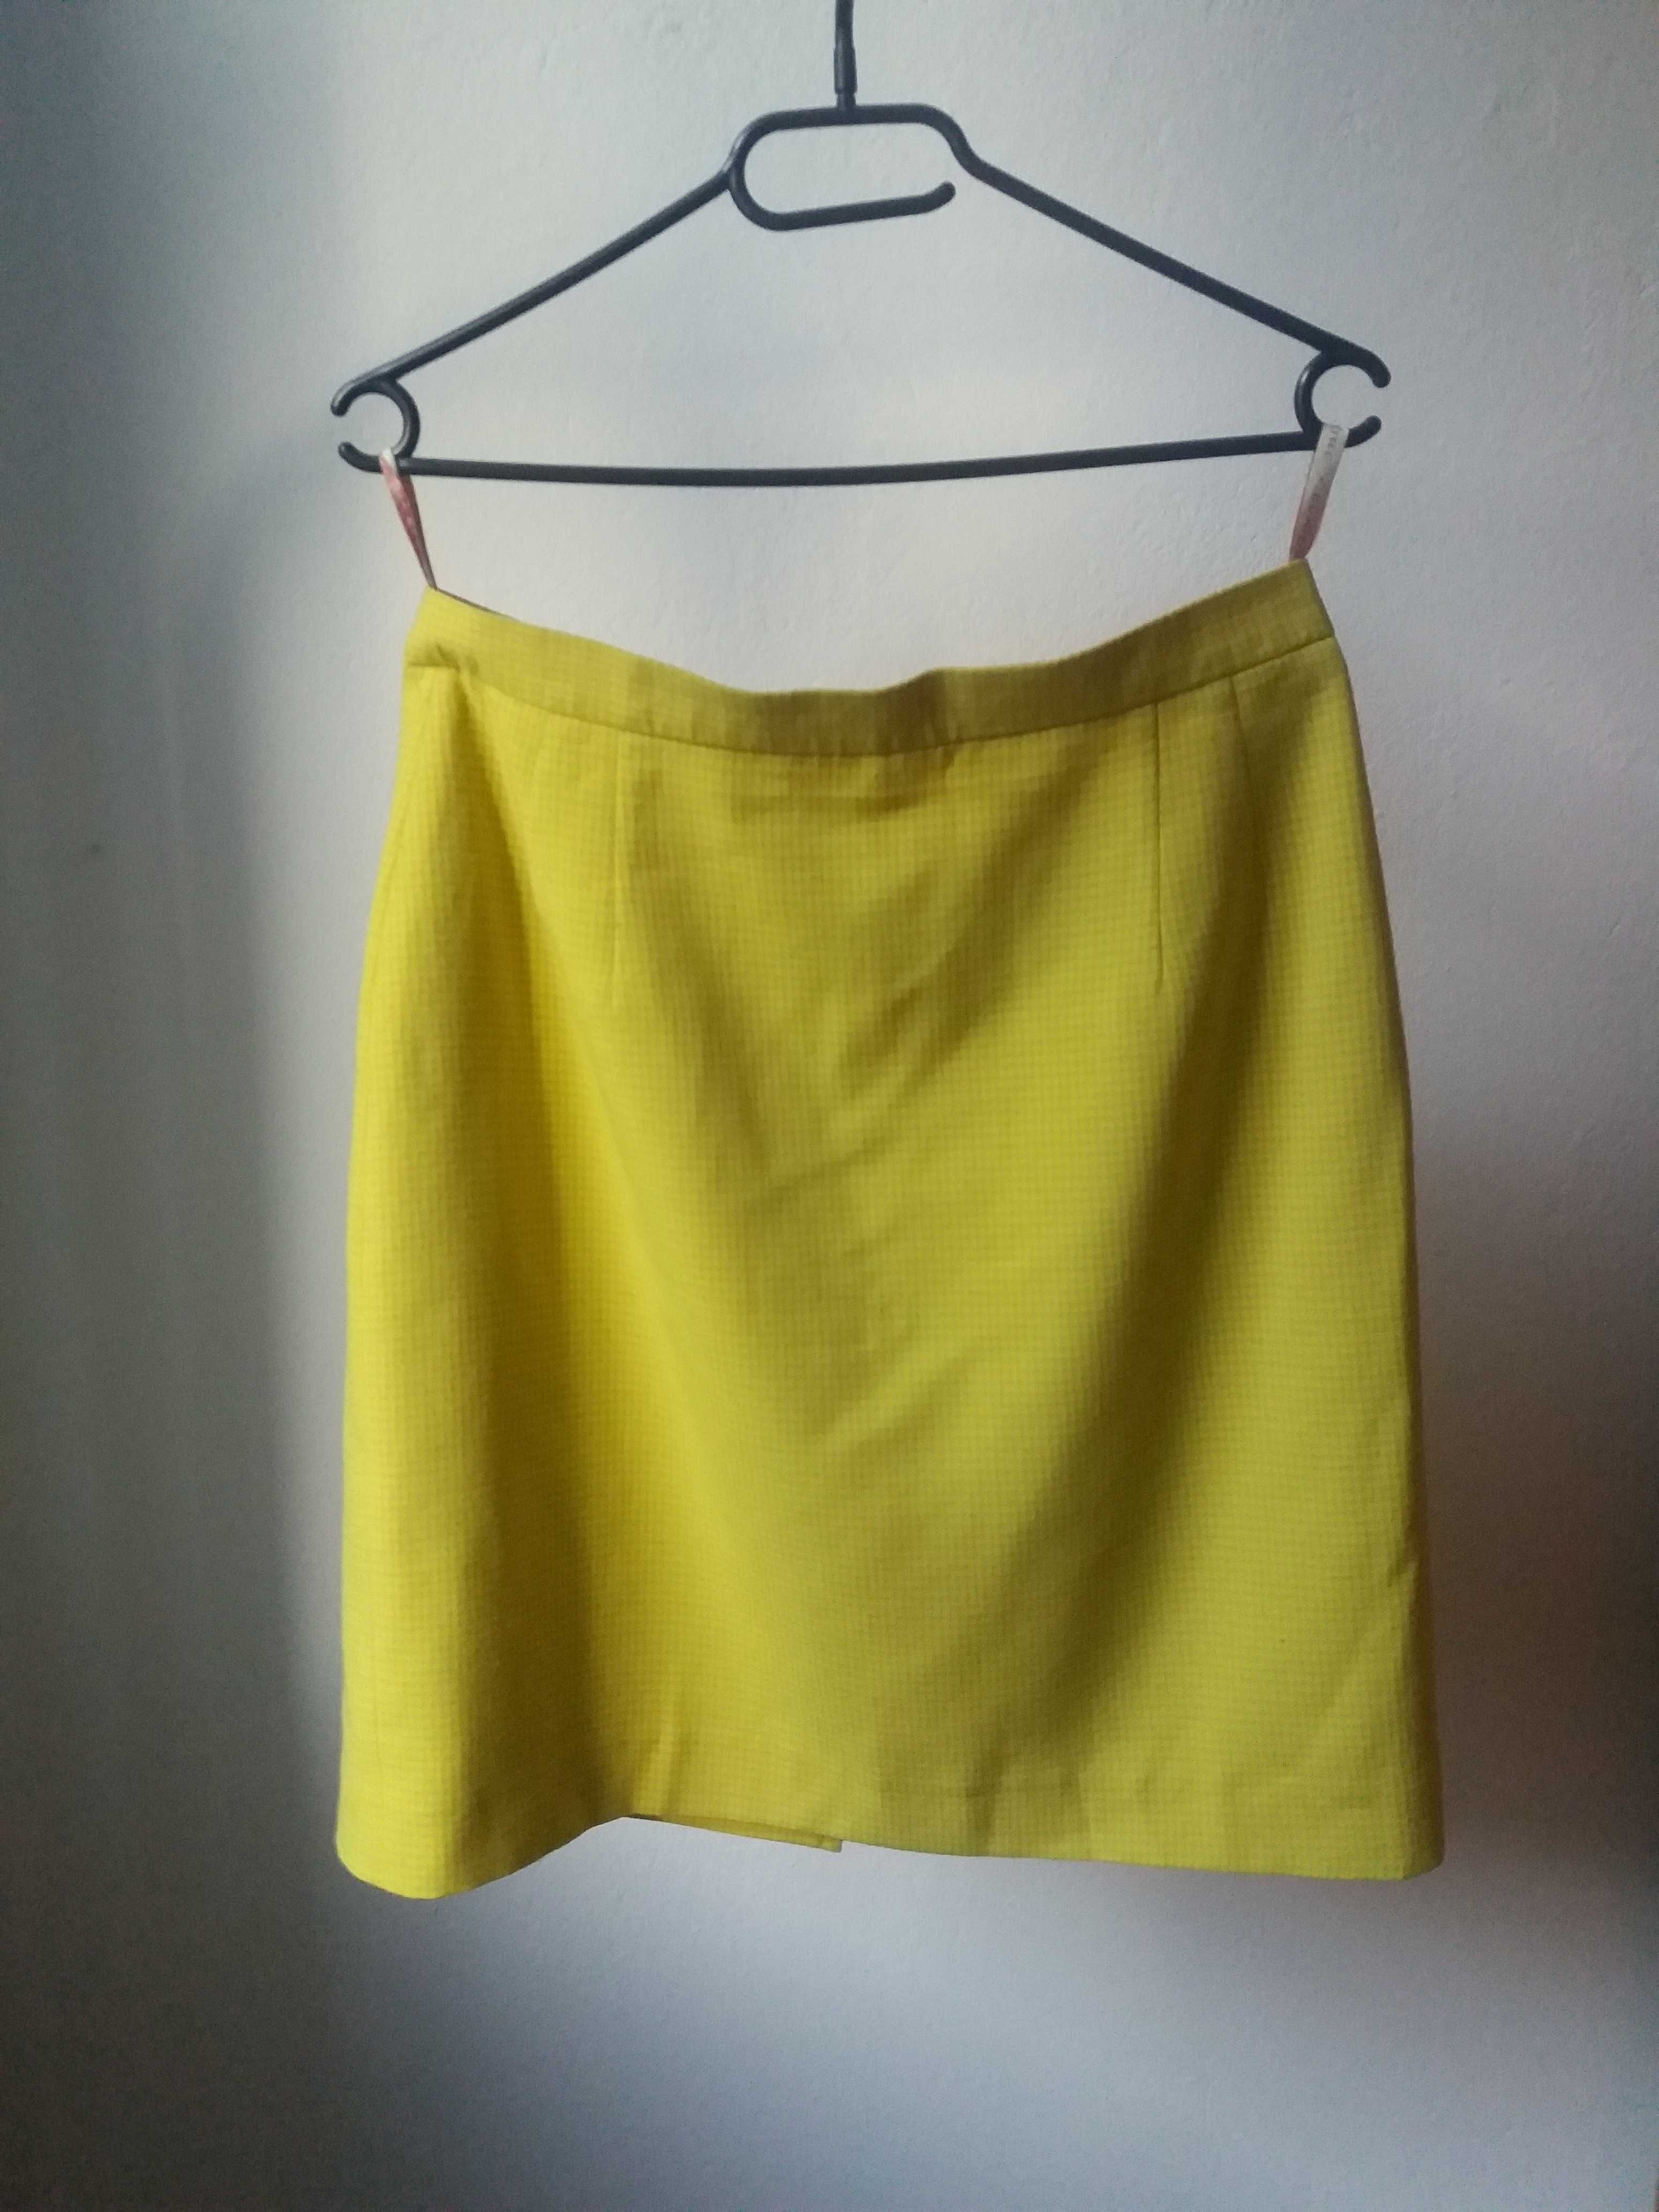 Spódnica ołówkowa cytrynowa żółta w kratkę Claire vintage retro